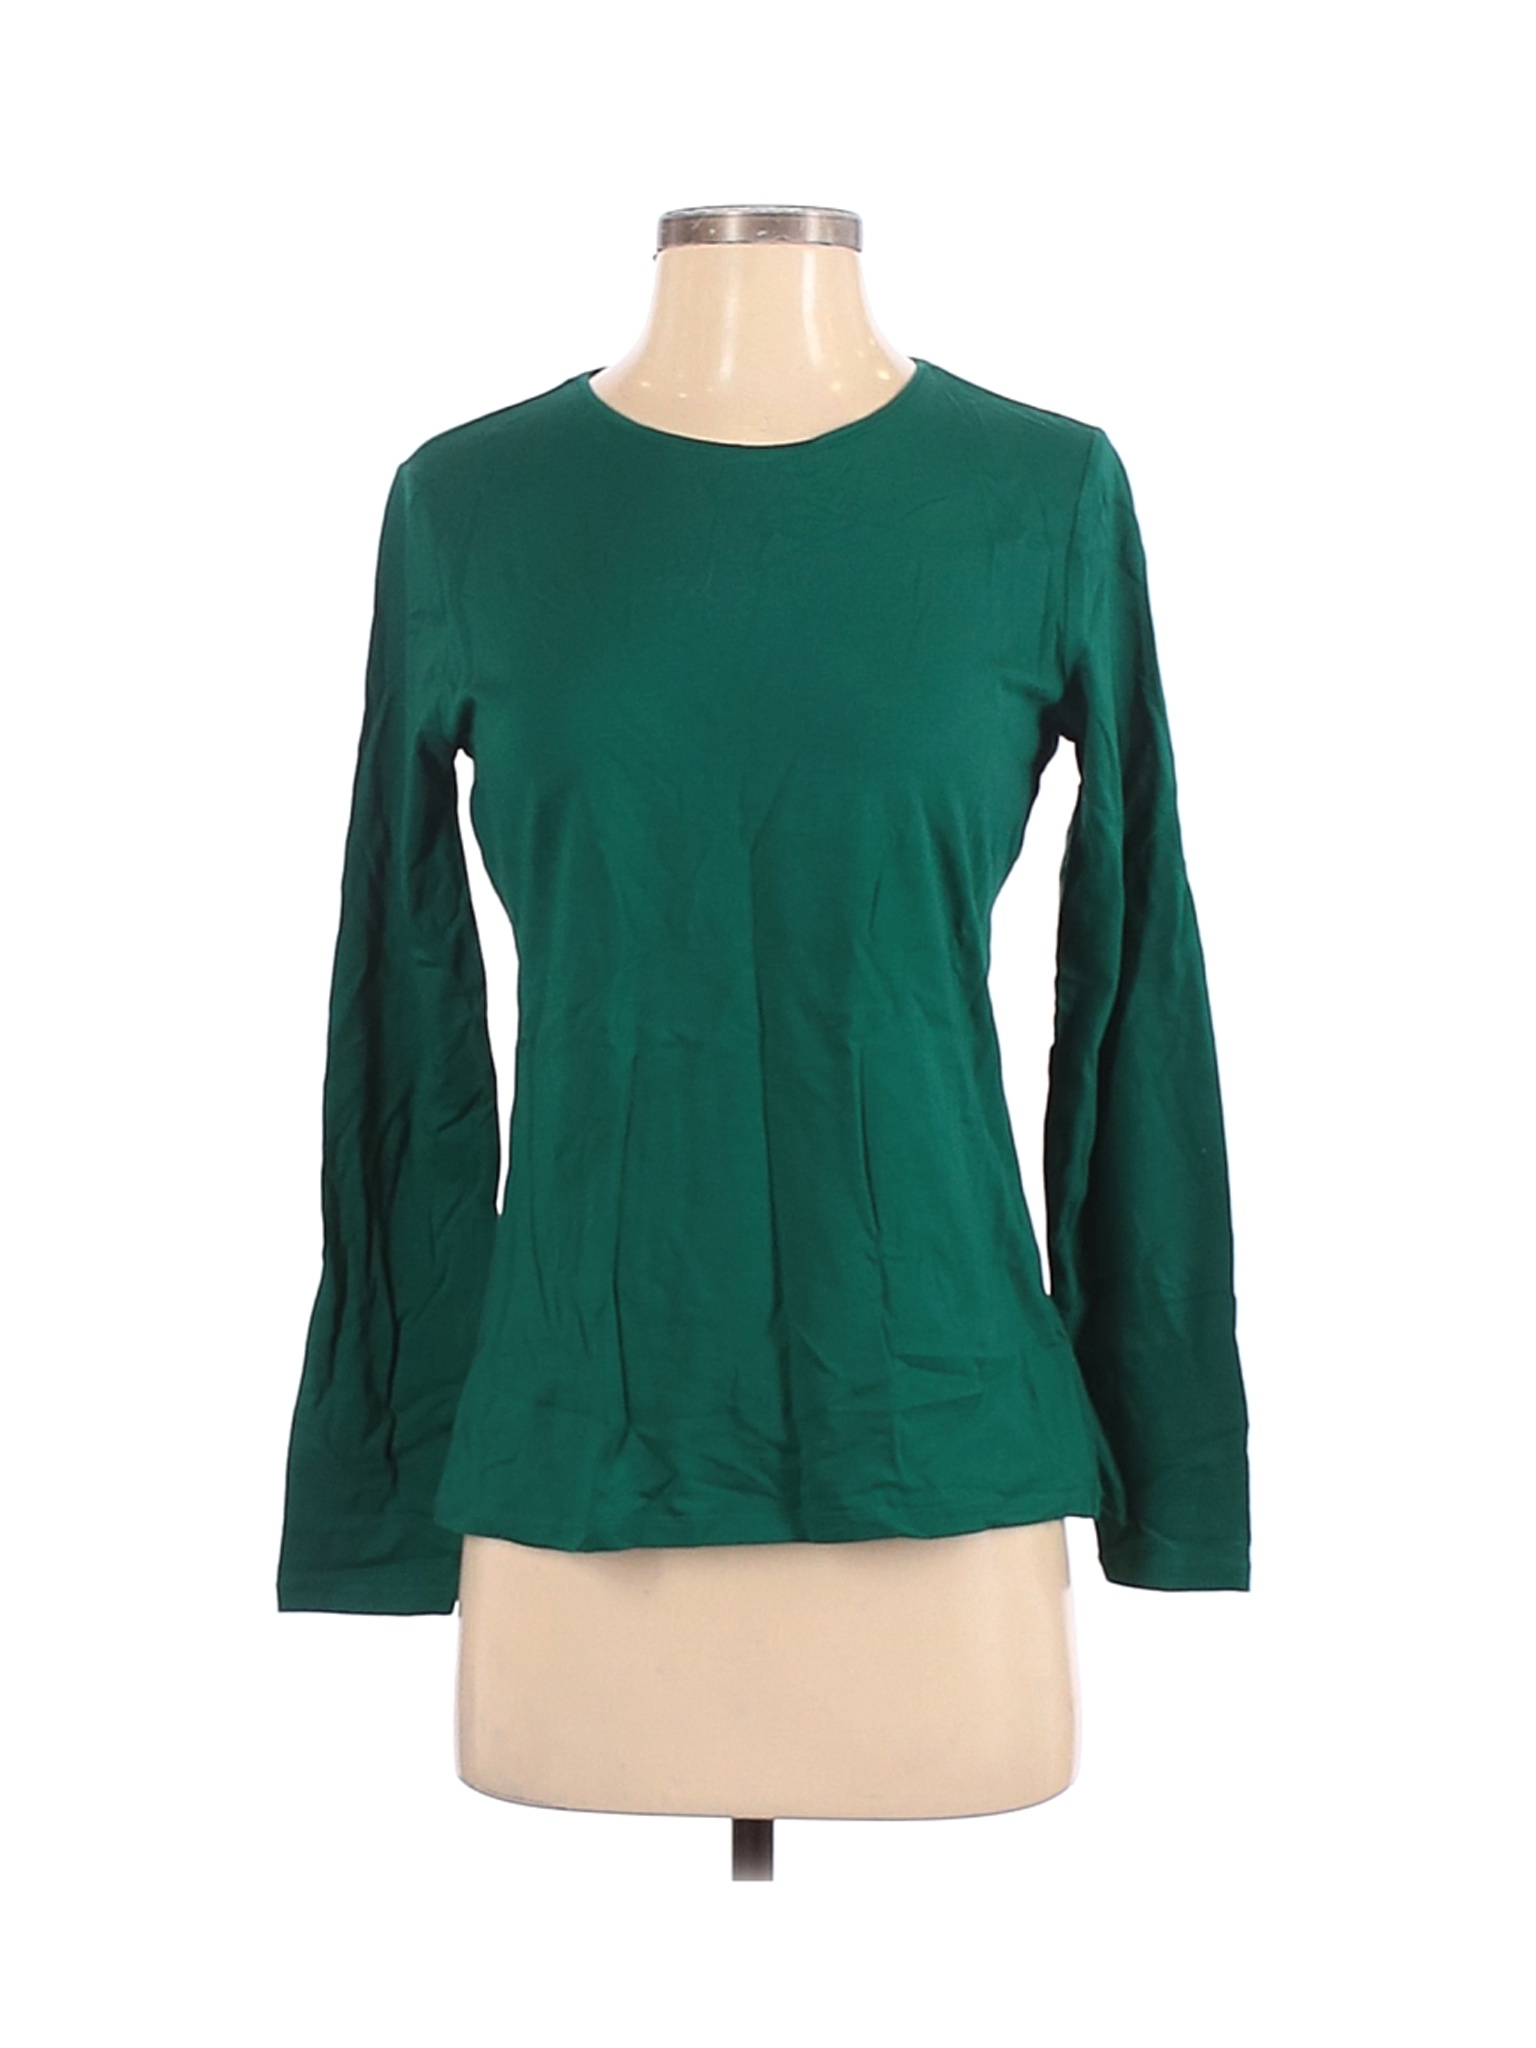 Lands' End Women Green Long Sleeve T-Shirt S | eBay